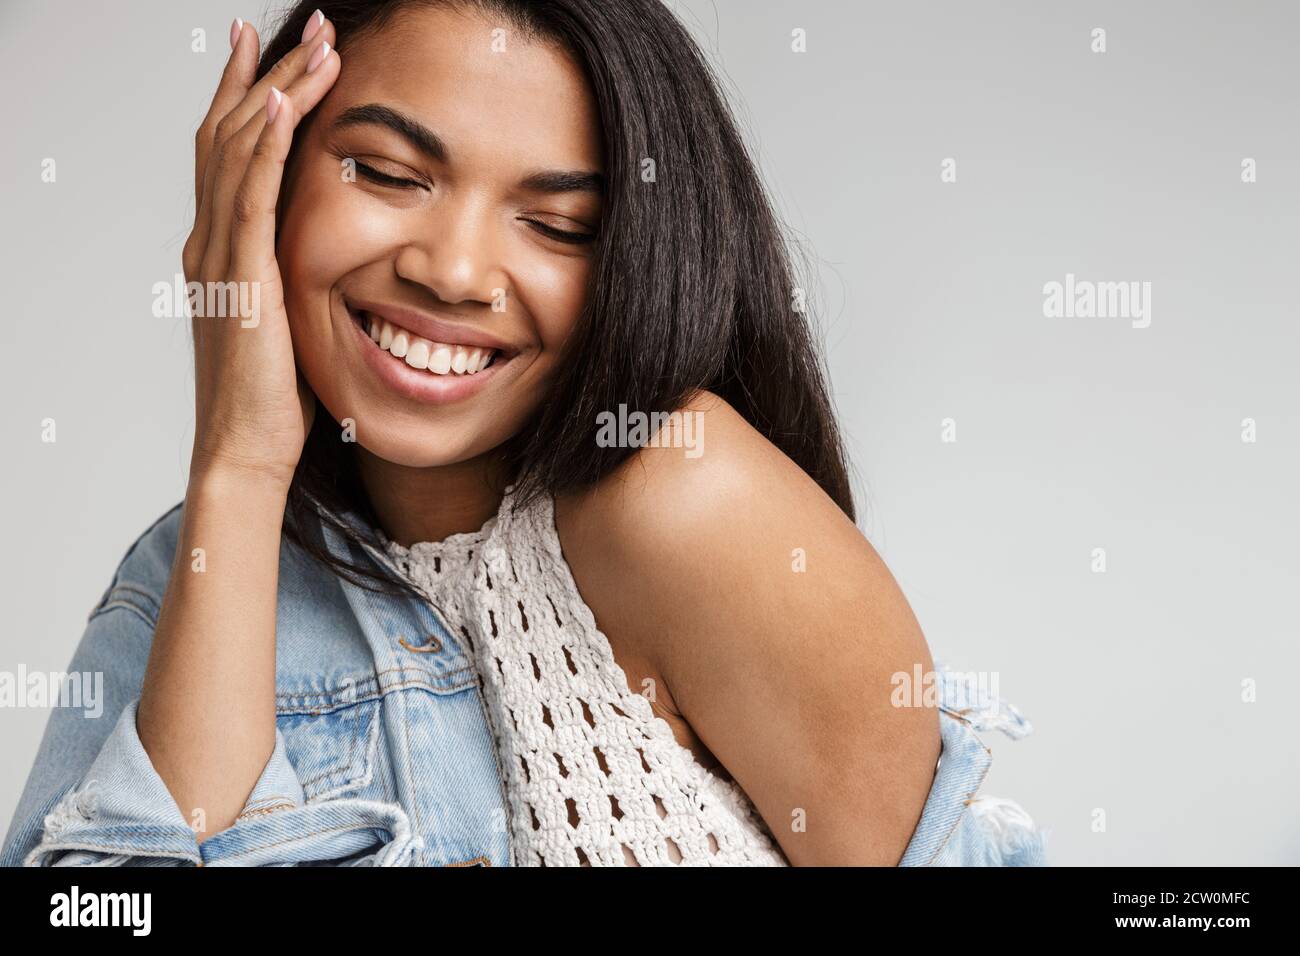 Portrait d'une jeune femme africaine souriante et heureuse avec de longues années cheveux foncés portant des vêtements décontractés se tenant isolé sur fond gris Banque D'Images